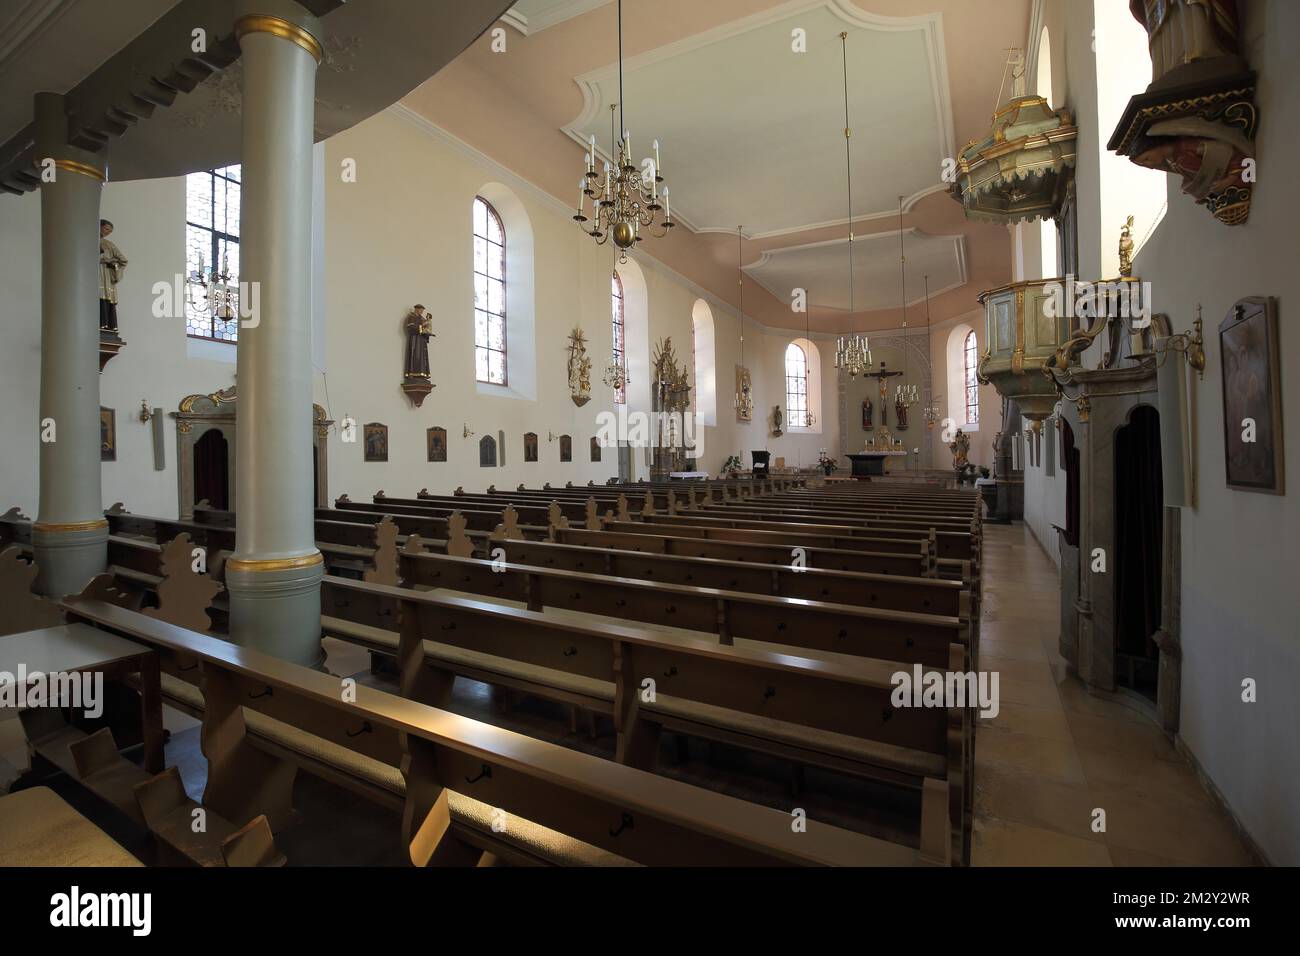 Interior view of St. Pankratius Church, Schwalbach, Taunus, Hesse, Germany Stock Photo